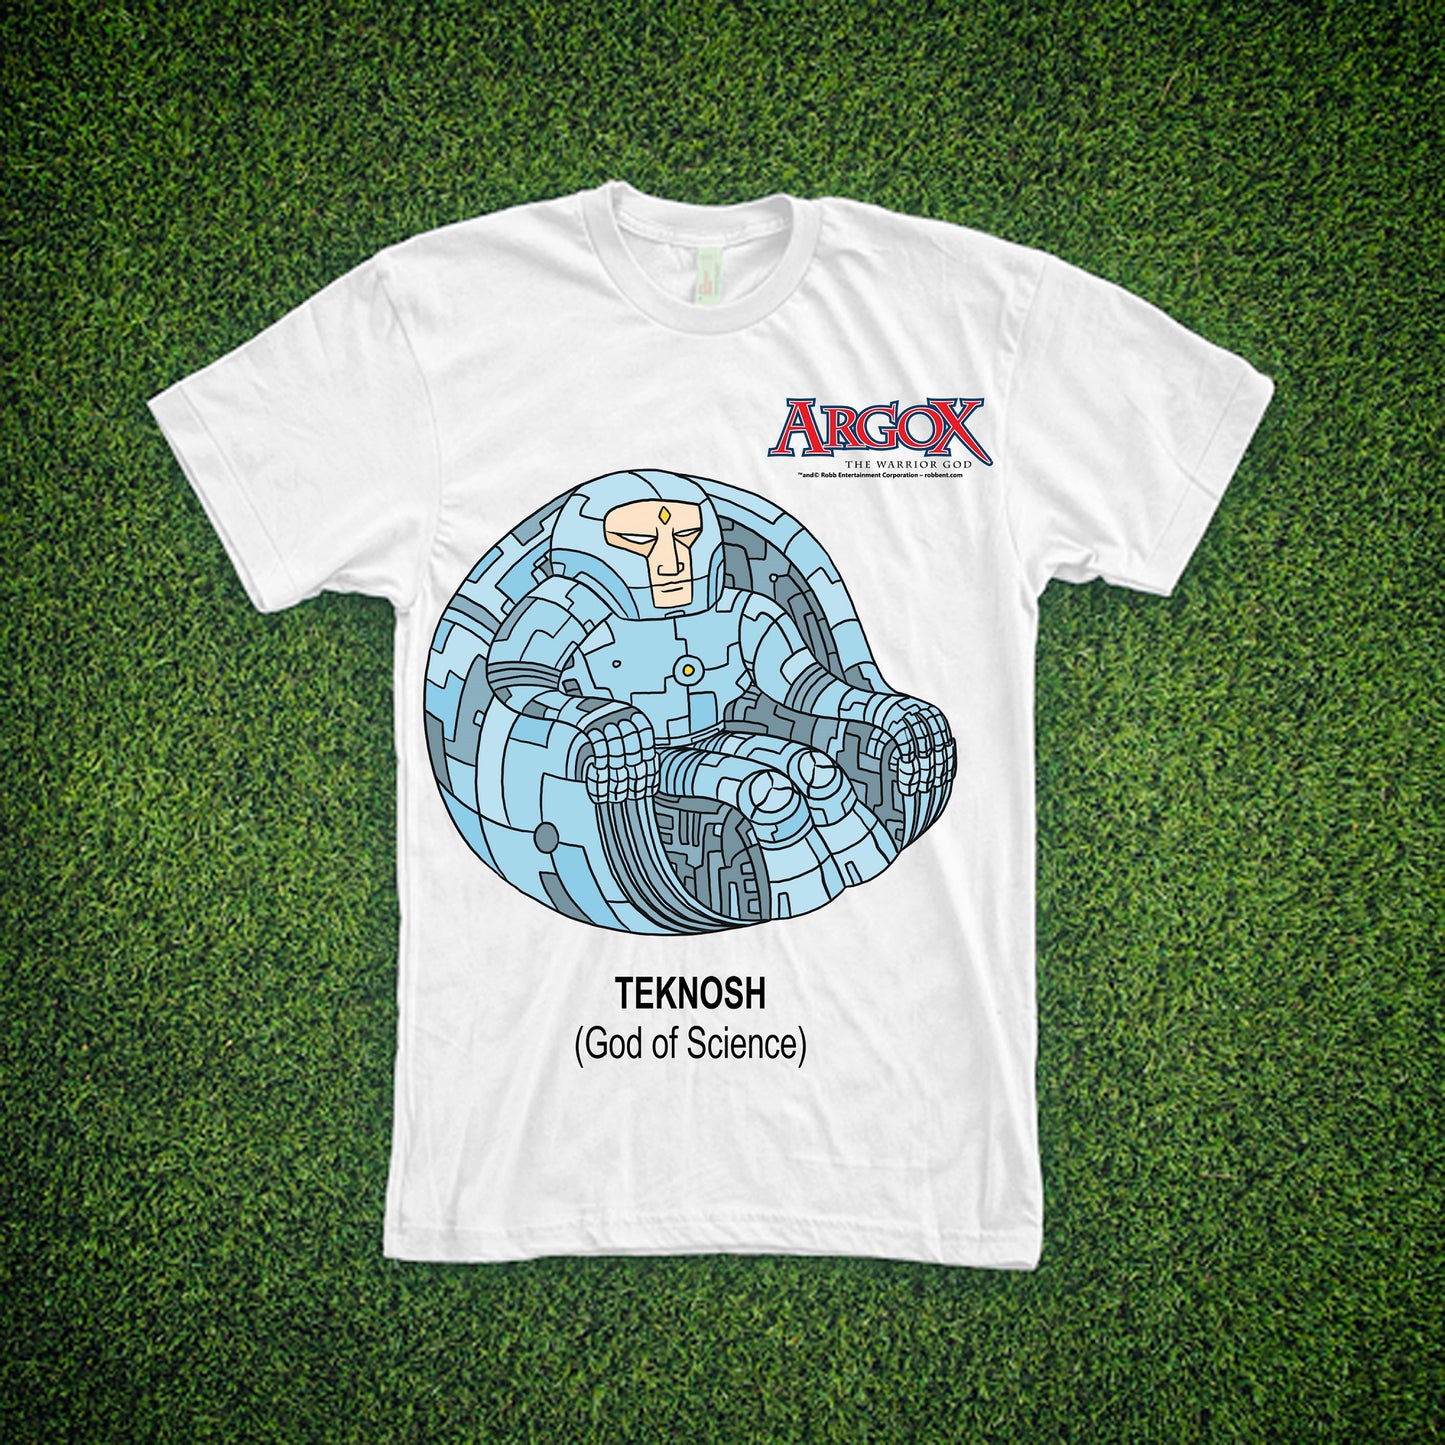 Teknosh - Argox - T-Shirt (white)